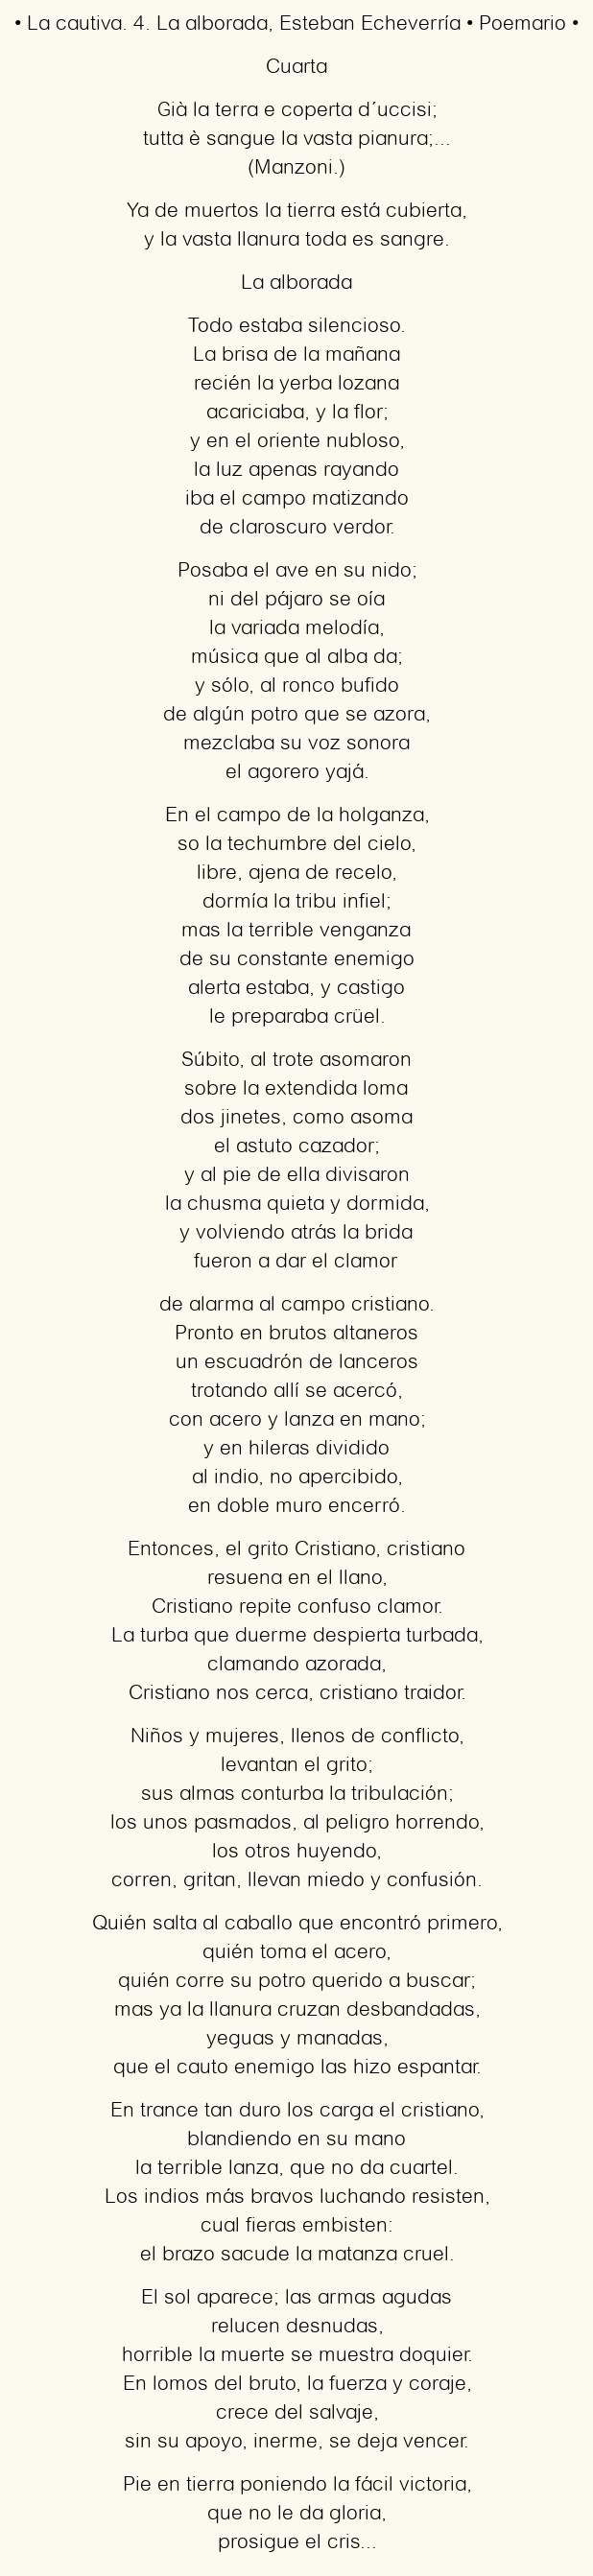 Imagen con el poema La cautiva. 4. La alborada, por Esteban Echeverría